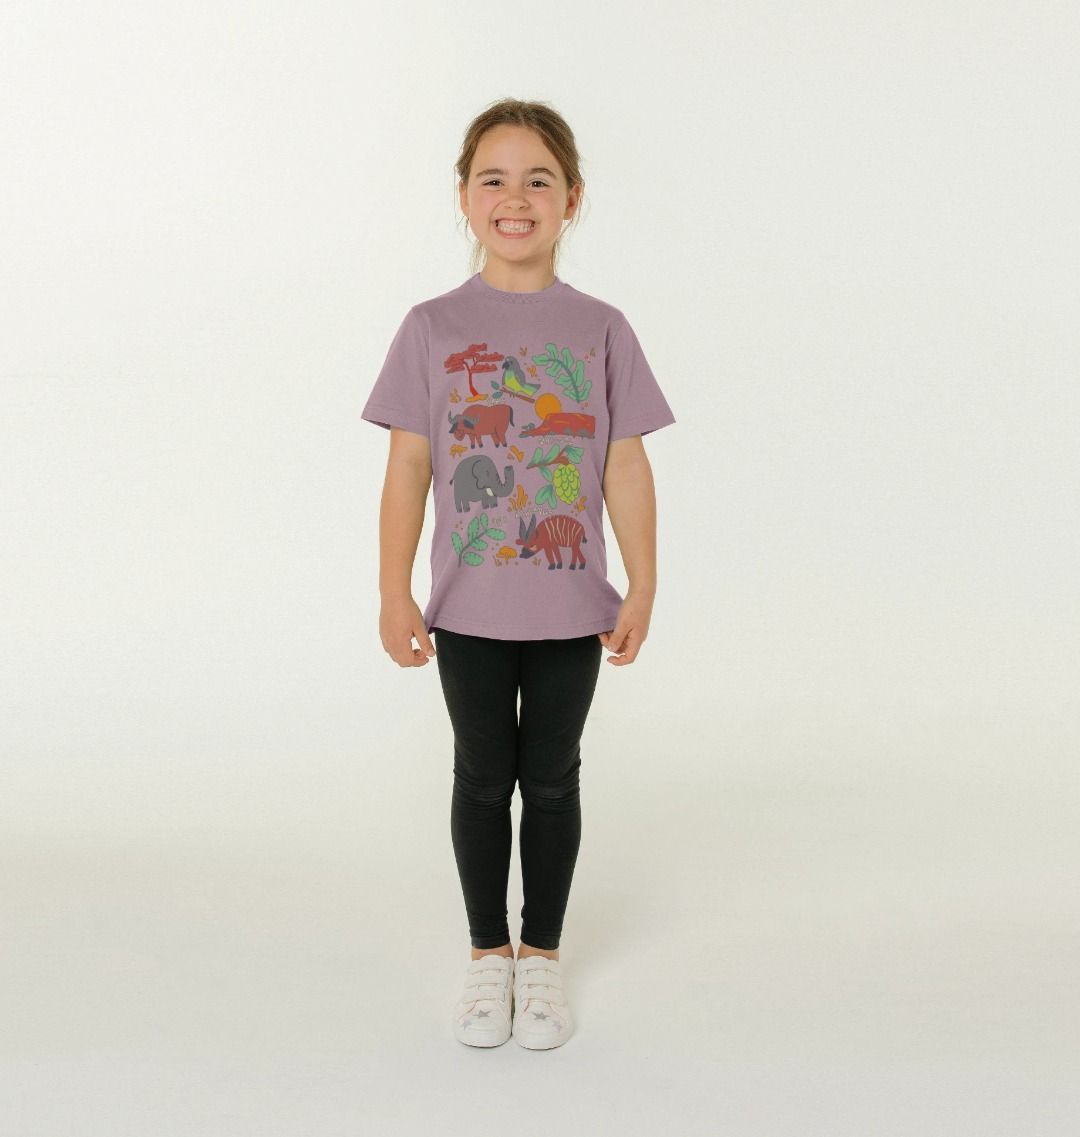 Savanna Wildlife Kids T-shirt